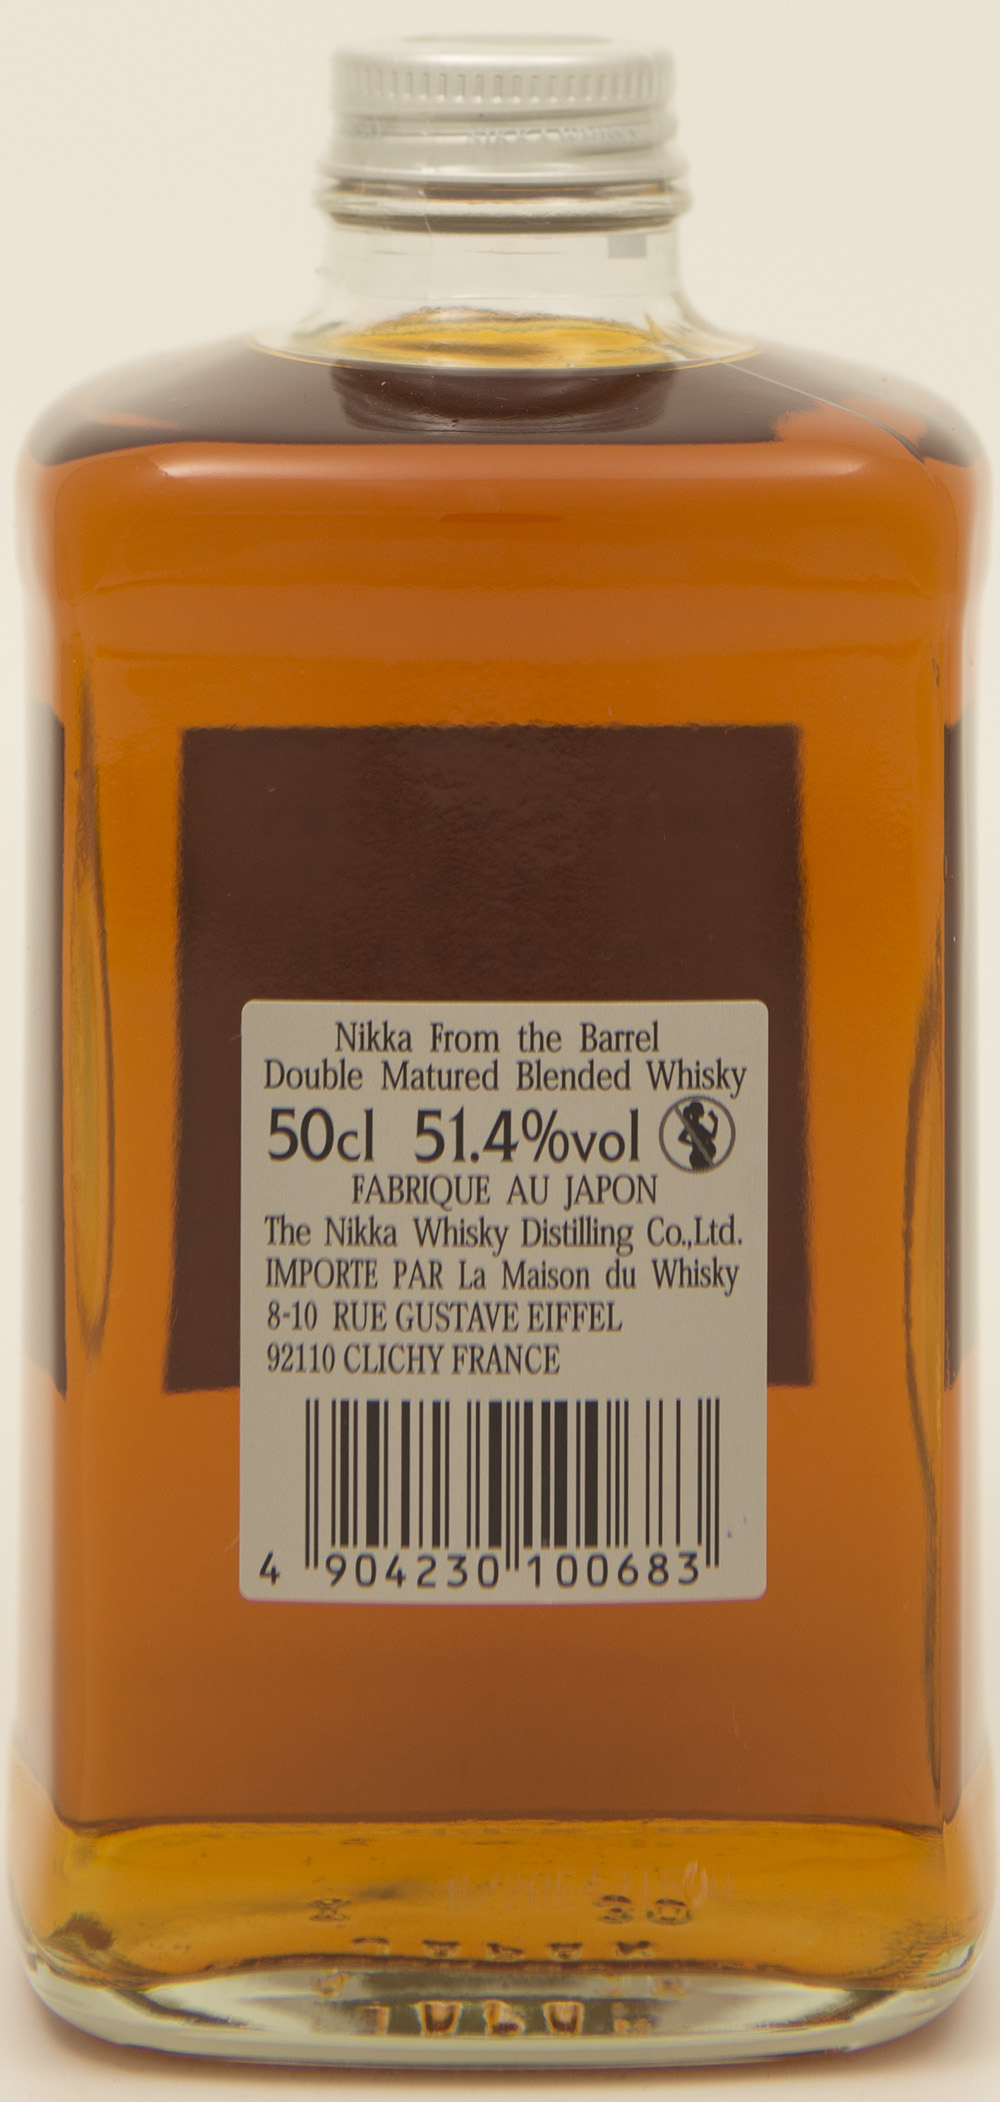 Billede: DSC_3673 - Nikka Whisky from The Barrel - bottle back.jpg